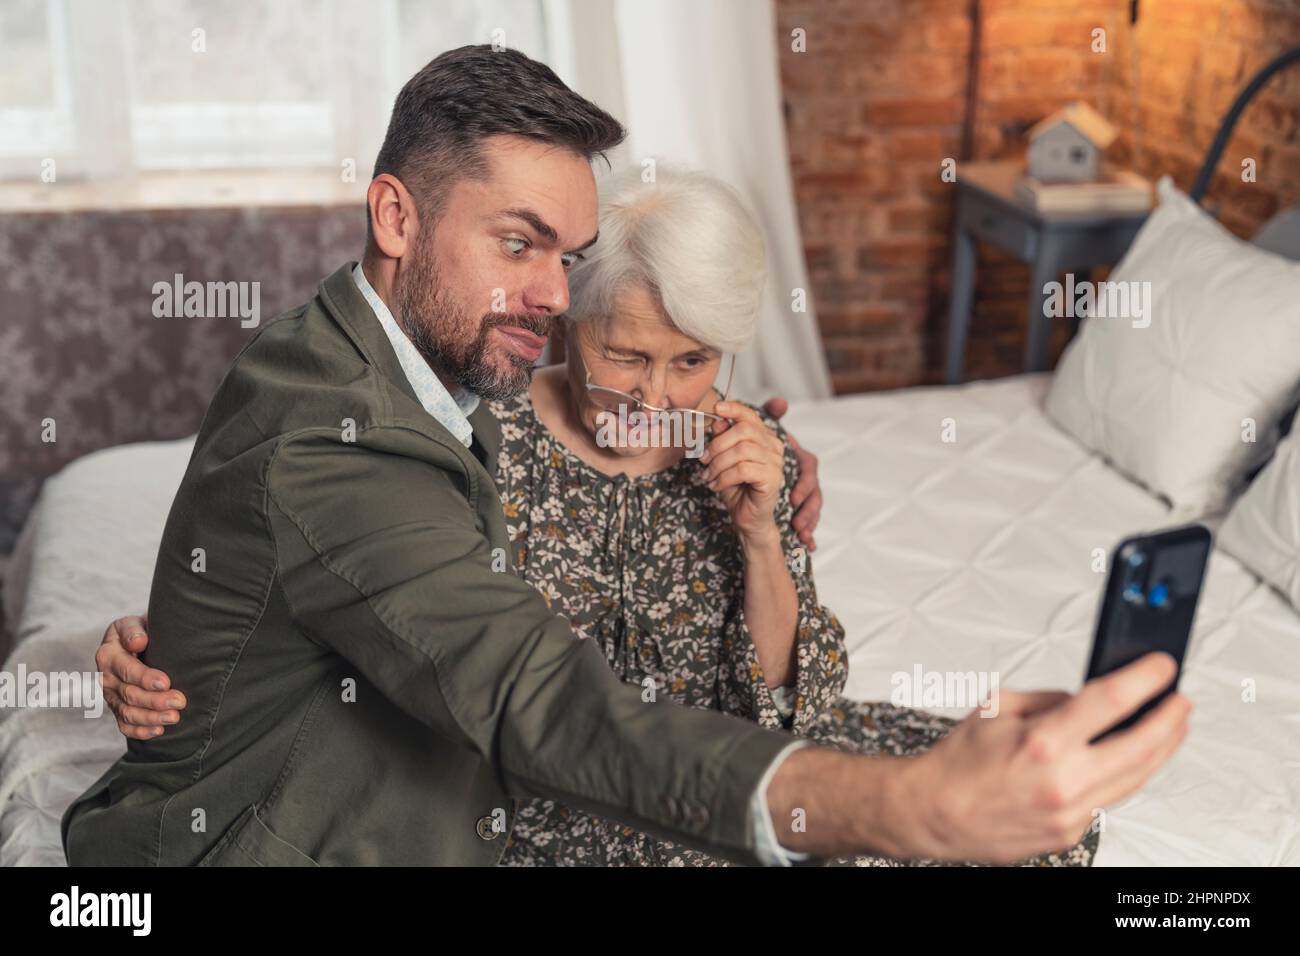 la nonna anziana e il suo nipote più antico fanno i volti stupidi e prendono un selfie con smartphone nero. Foto di alta qualità Foto Stock